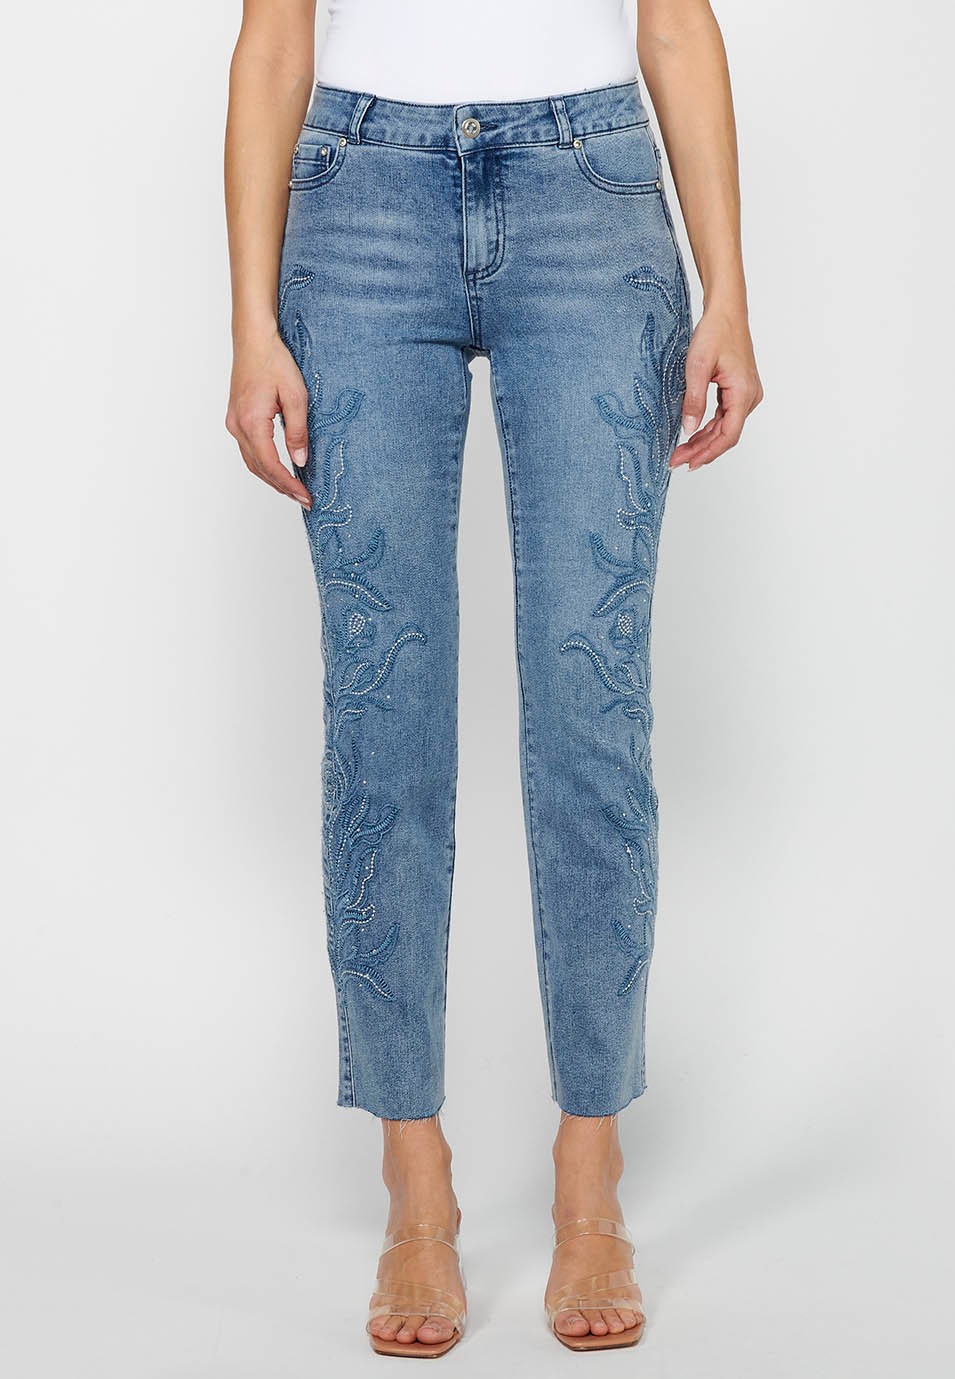 Pantalon long évasé en jean avec fermeture éclair sur le devant et détails brodés de fleurs bleu clair pour femme 2